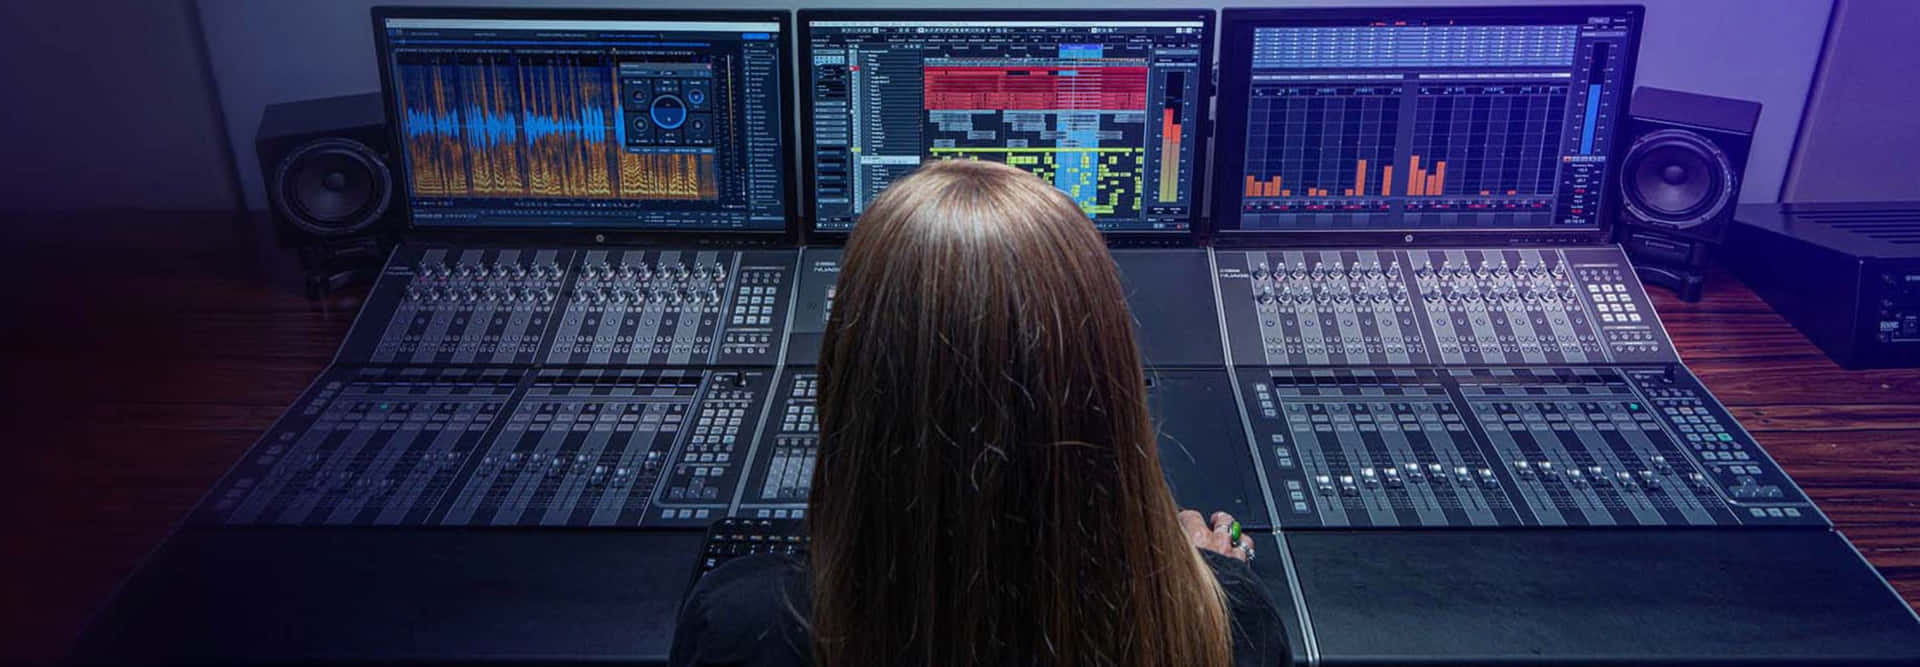 Passionate Musicians Creating Harmonious Magic in the Recording Studio